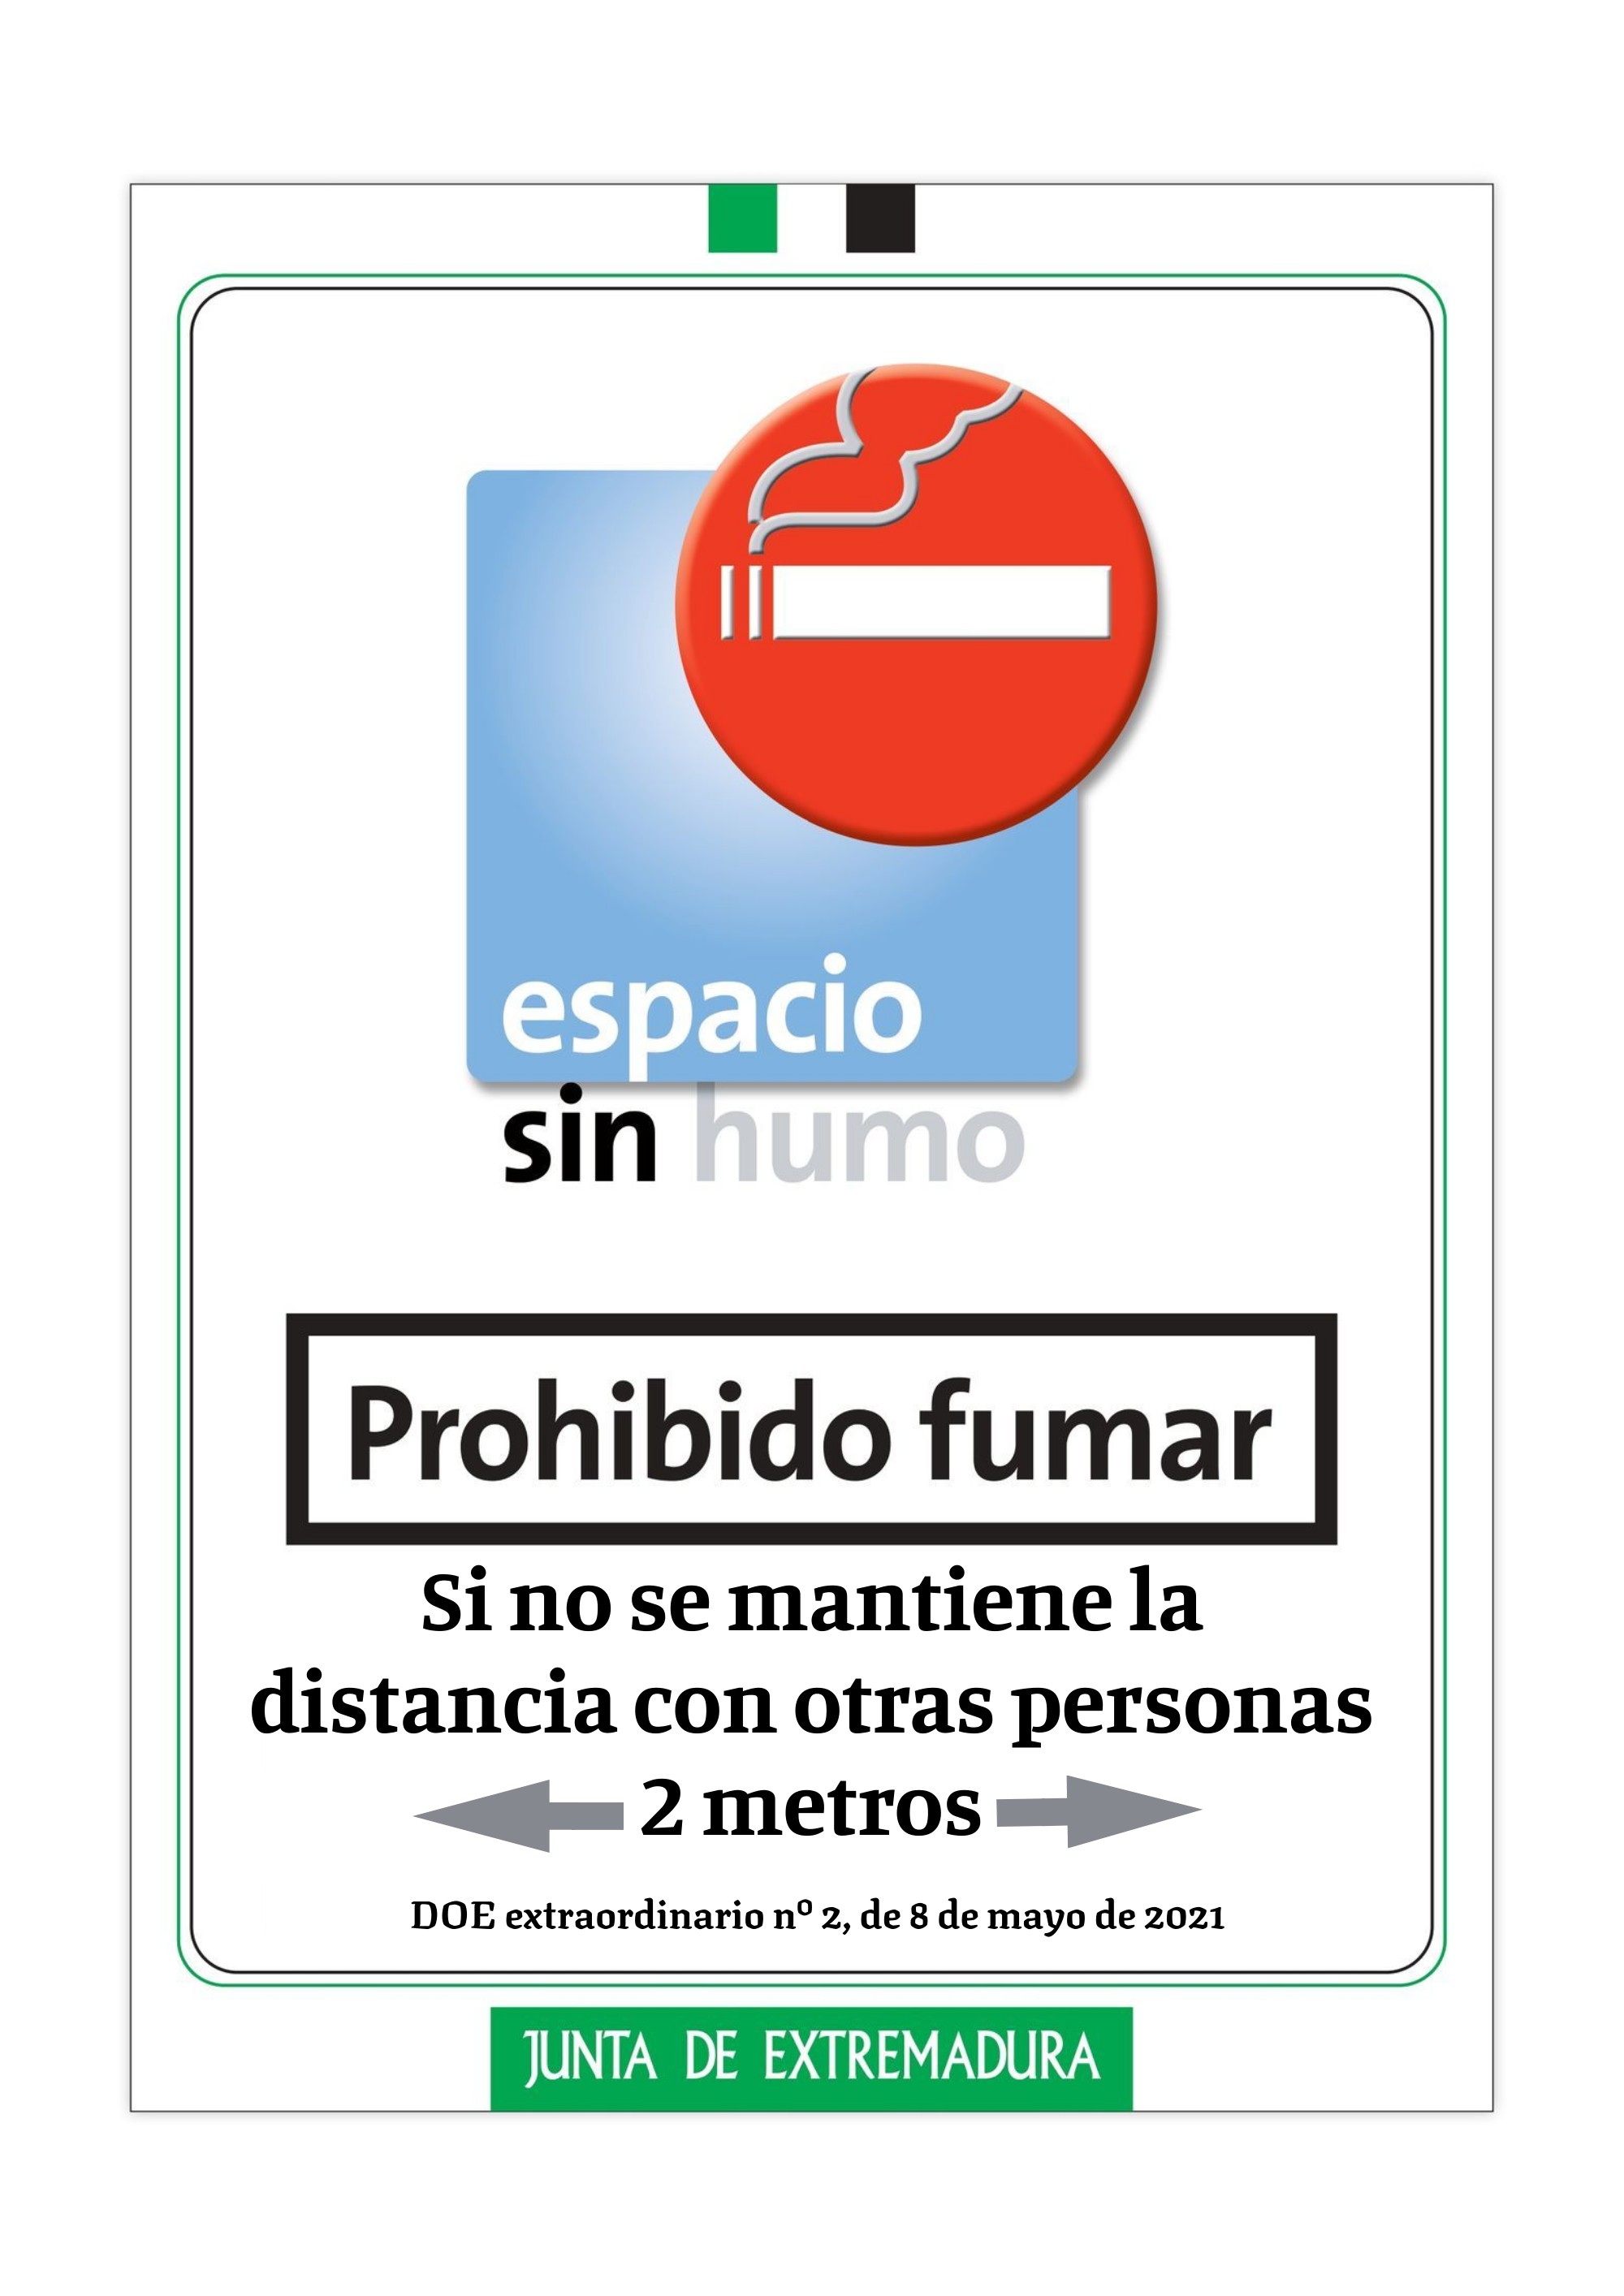 Extremadura Salud - Detalle de Noticia